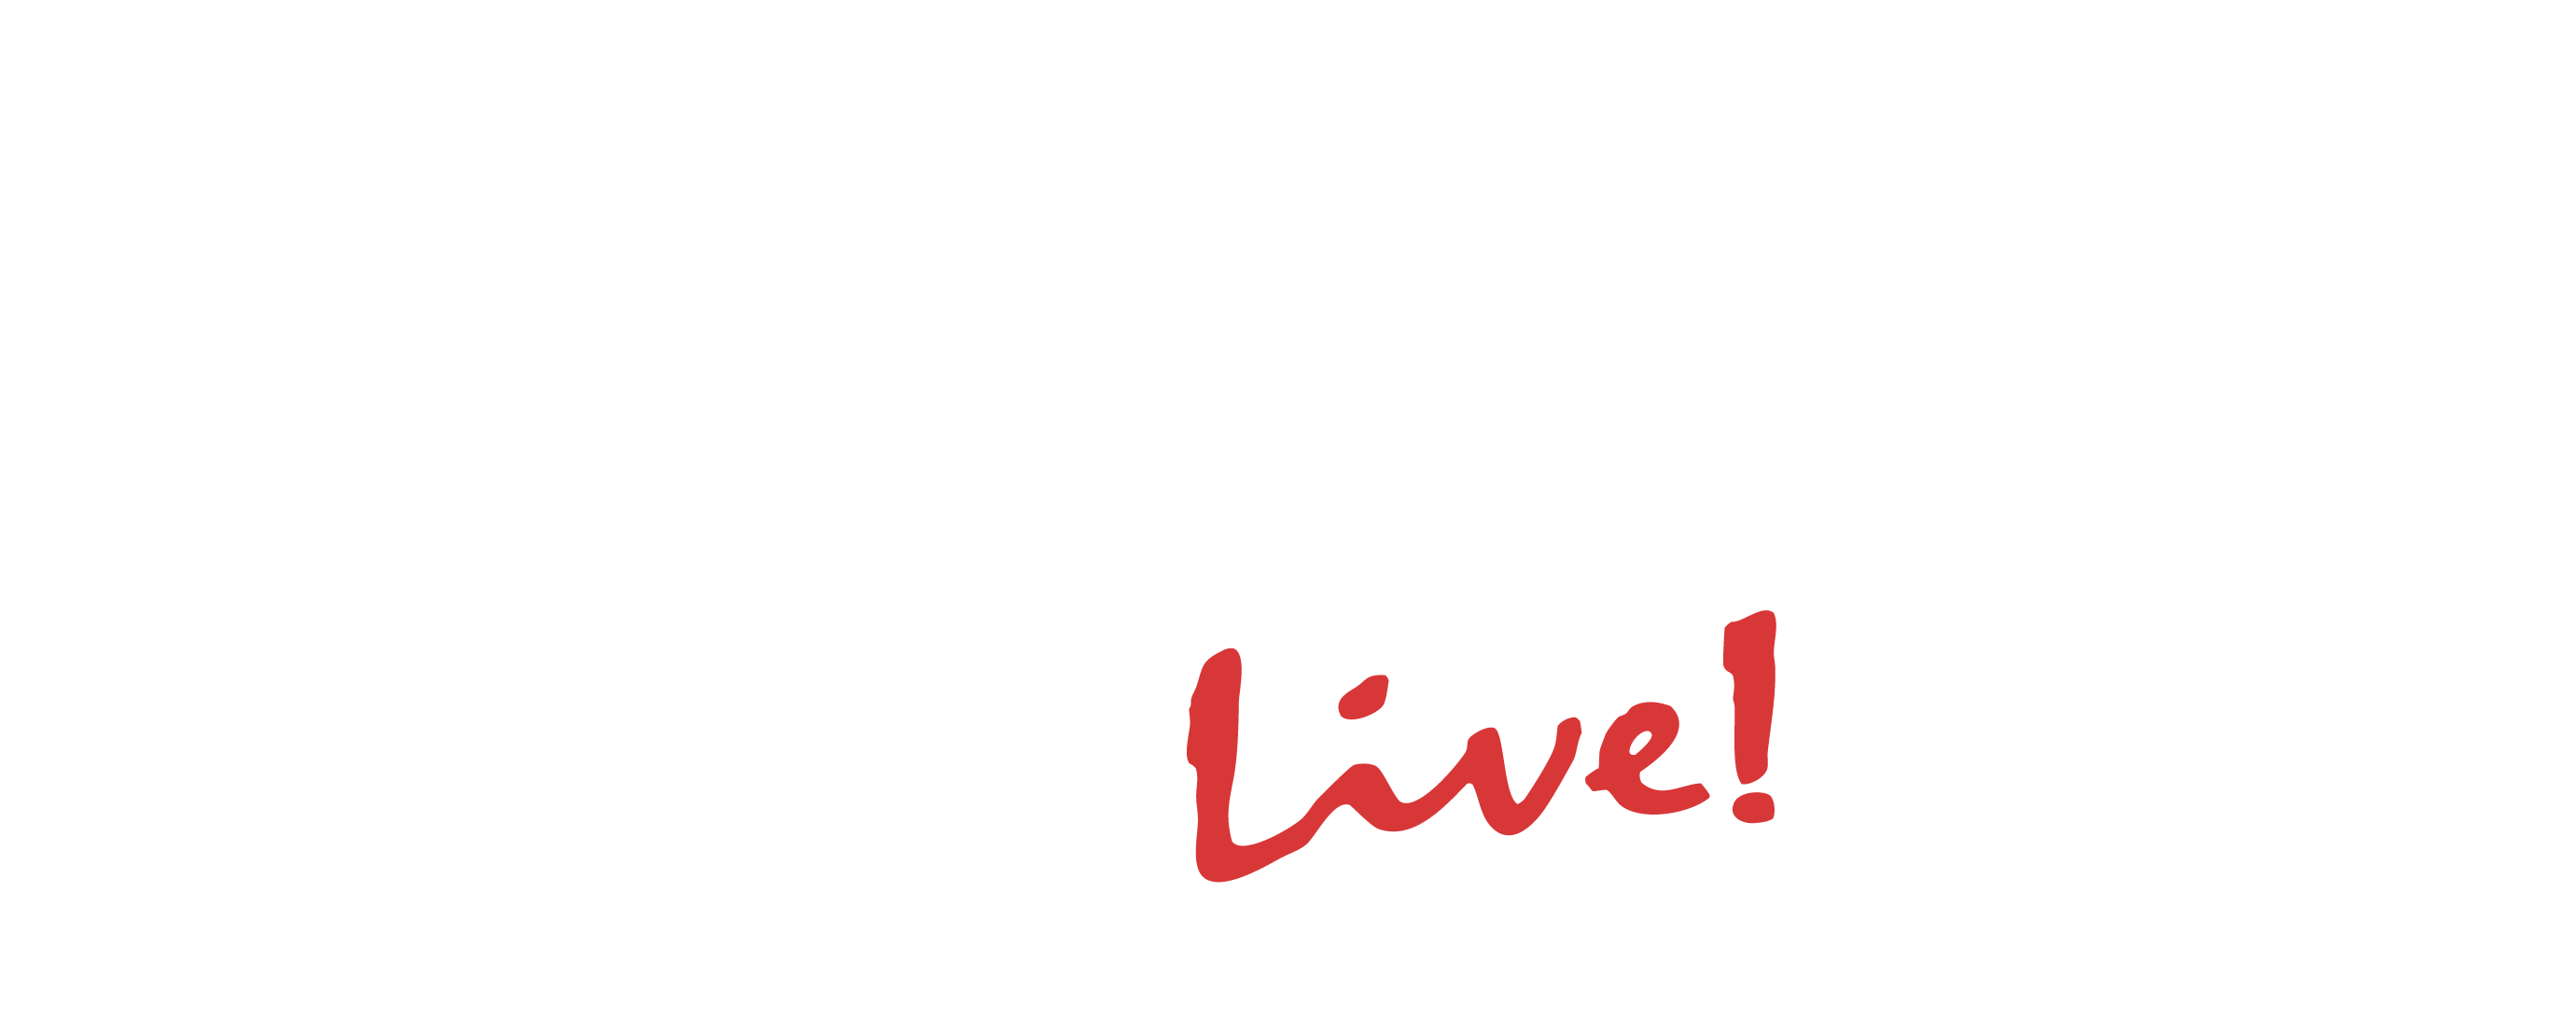 The Venue Live!